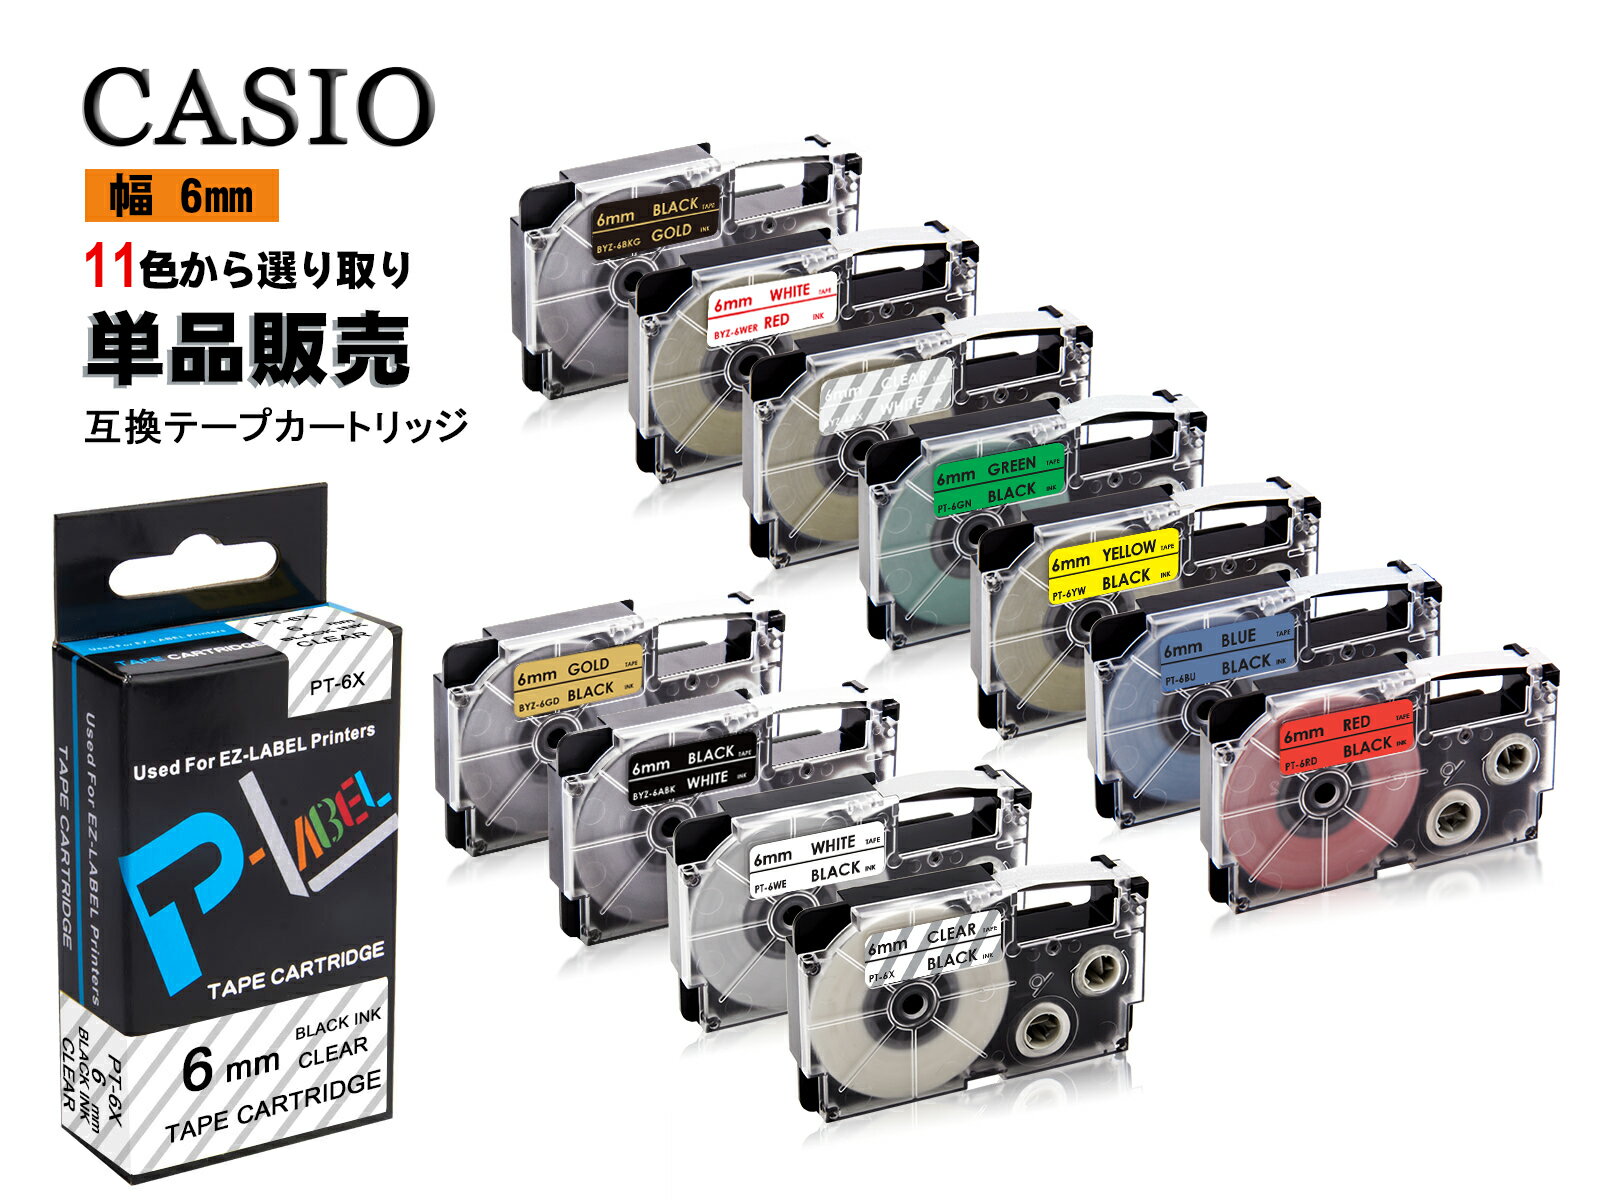 Casio casio カシオ ネームランド 互換テープカートリッジ テプラテープ 互換 幅 6mm 長さ 8m 全 11色 テープカートリッジ カラーラベル カシオ用 ネームランド 1個セット 2年保証可能 PT910BT